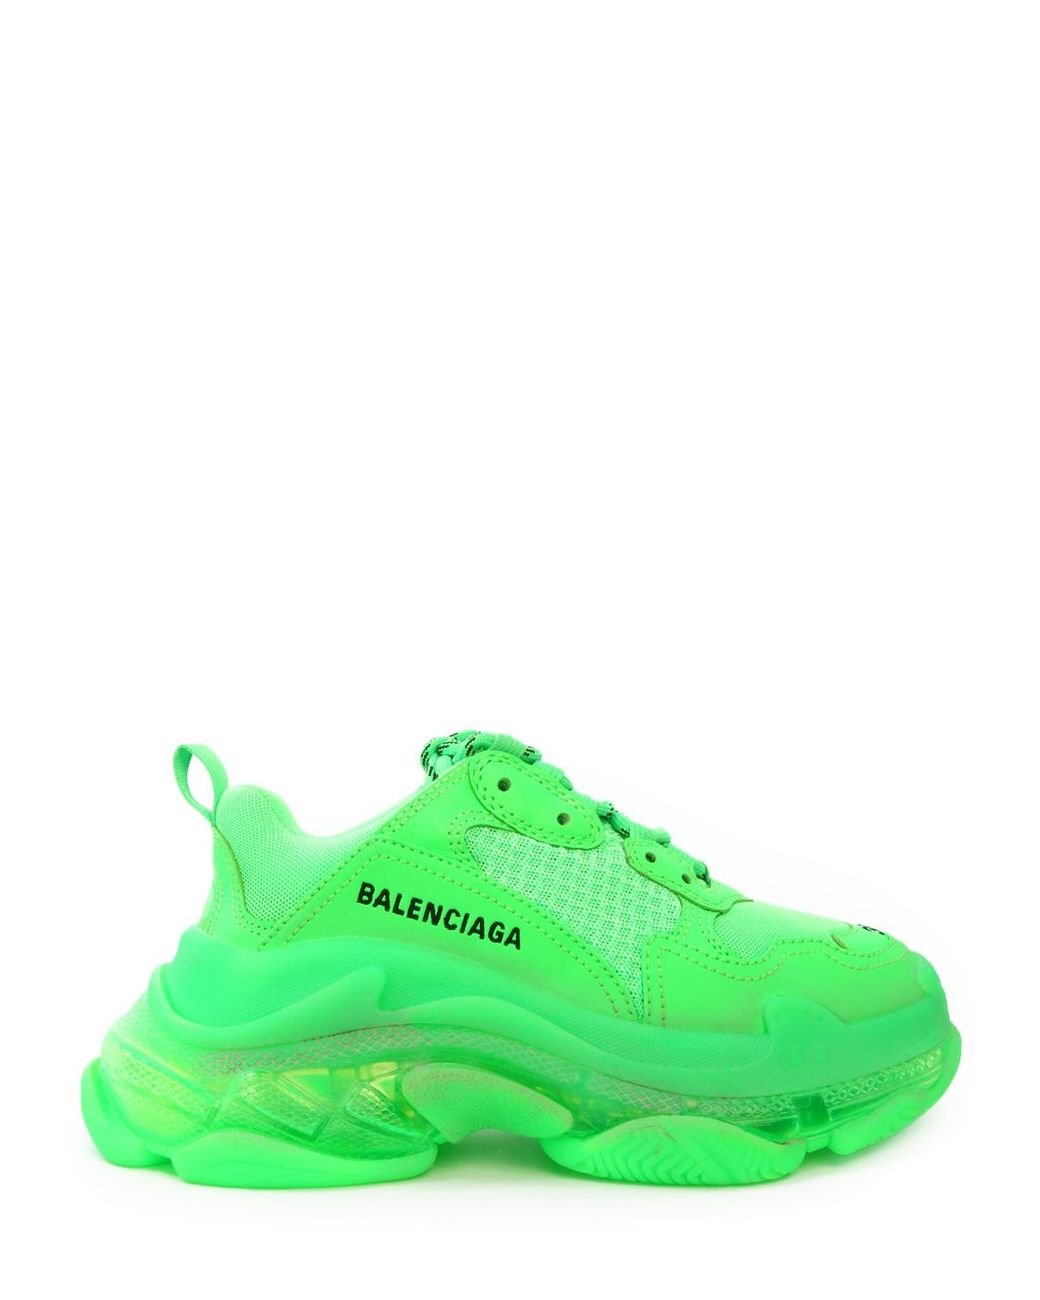 Déstockage > balenciaga neon green shoes -